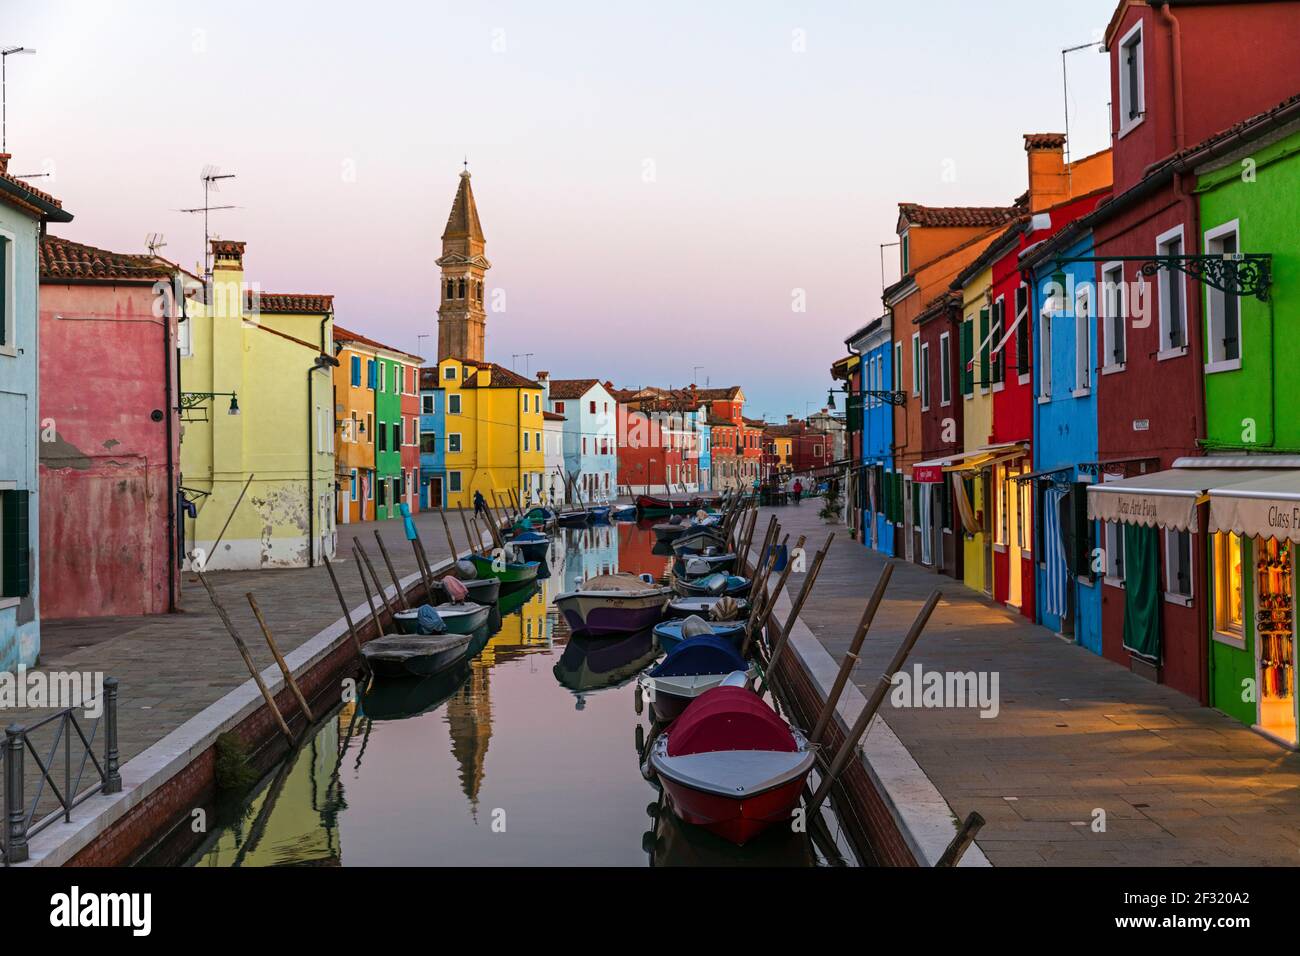 L'isola veneziana di Burano, barche ormeggiate su un canale, casa colorata e negozi al tramonto Foto Stock